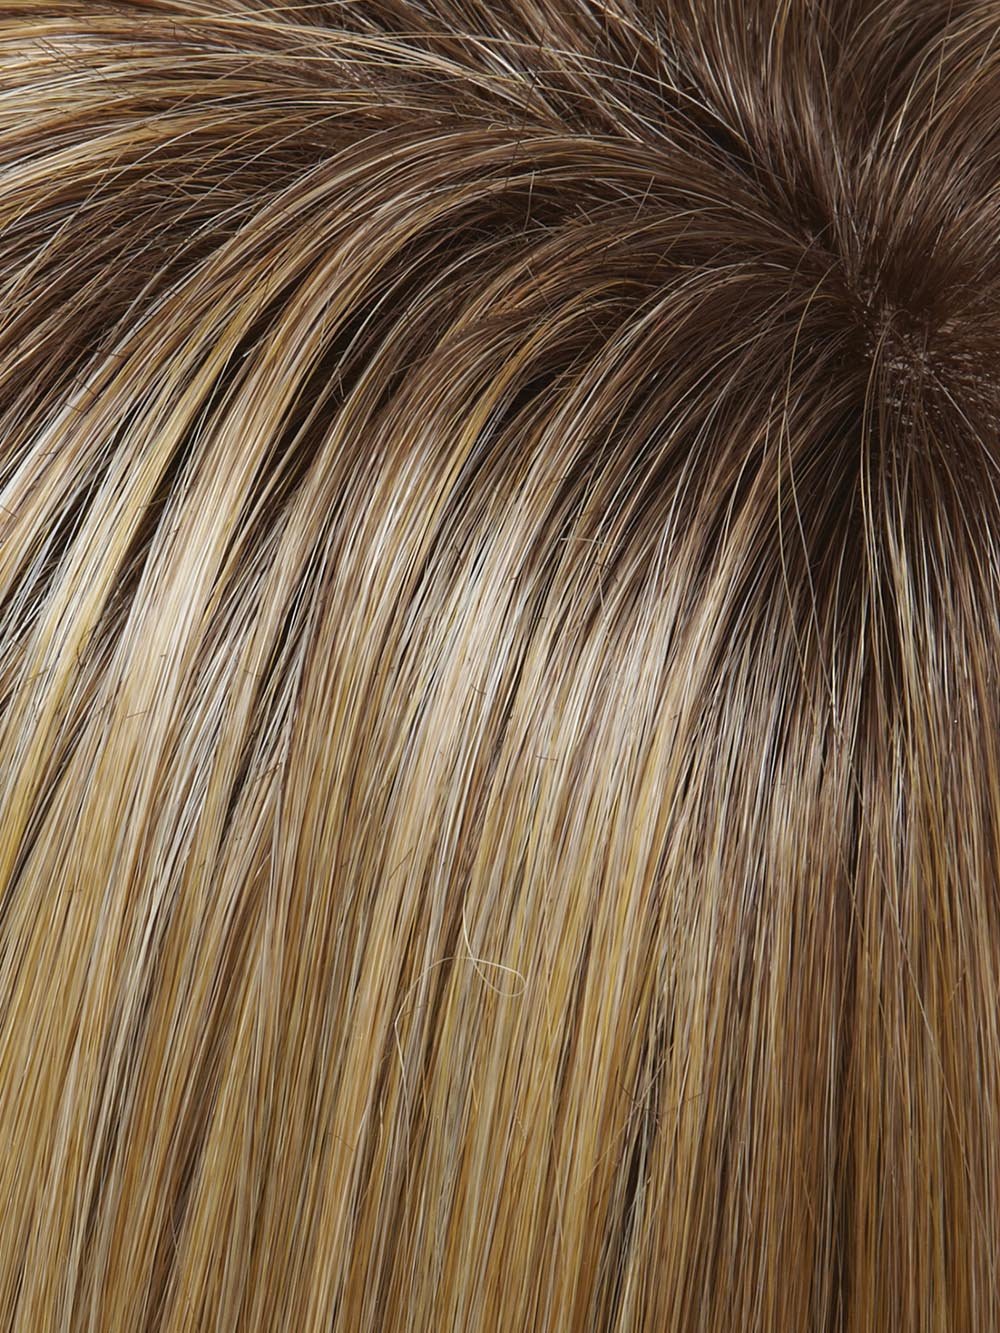 24B/27CS10 SHADED BUTTERSCOTCH | Light Gold Blonde & Medium Red-Gold Blonde Blend, Shaded with Light Brown